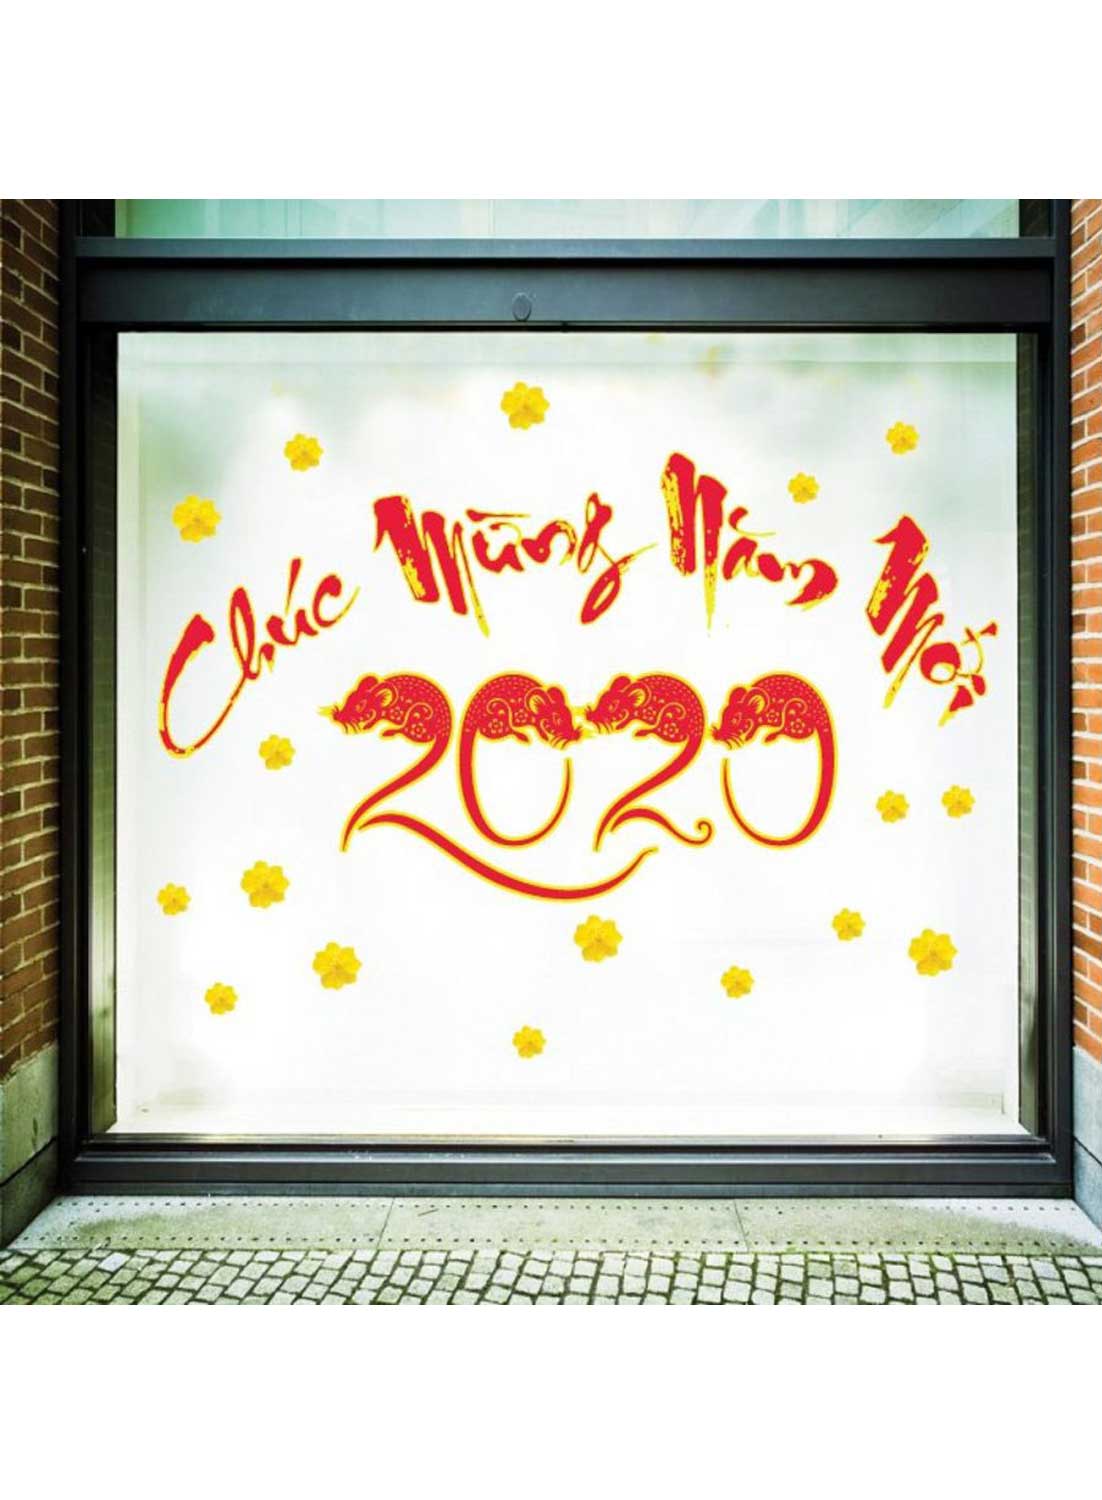 Decal Trang Trí Tết Chúc Mừng Năm Mới 2020